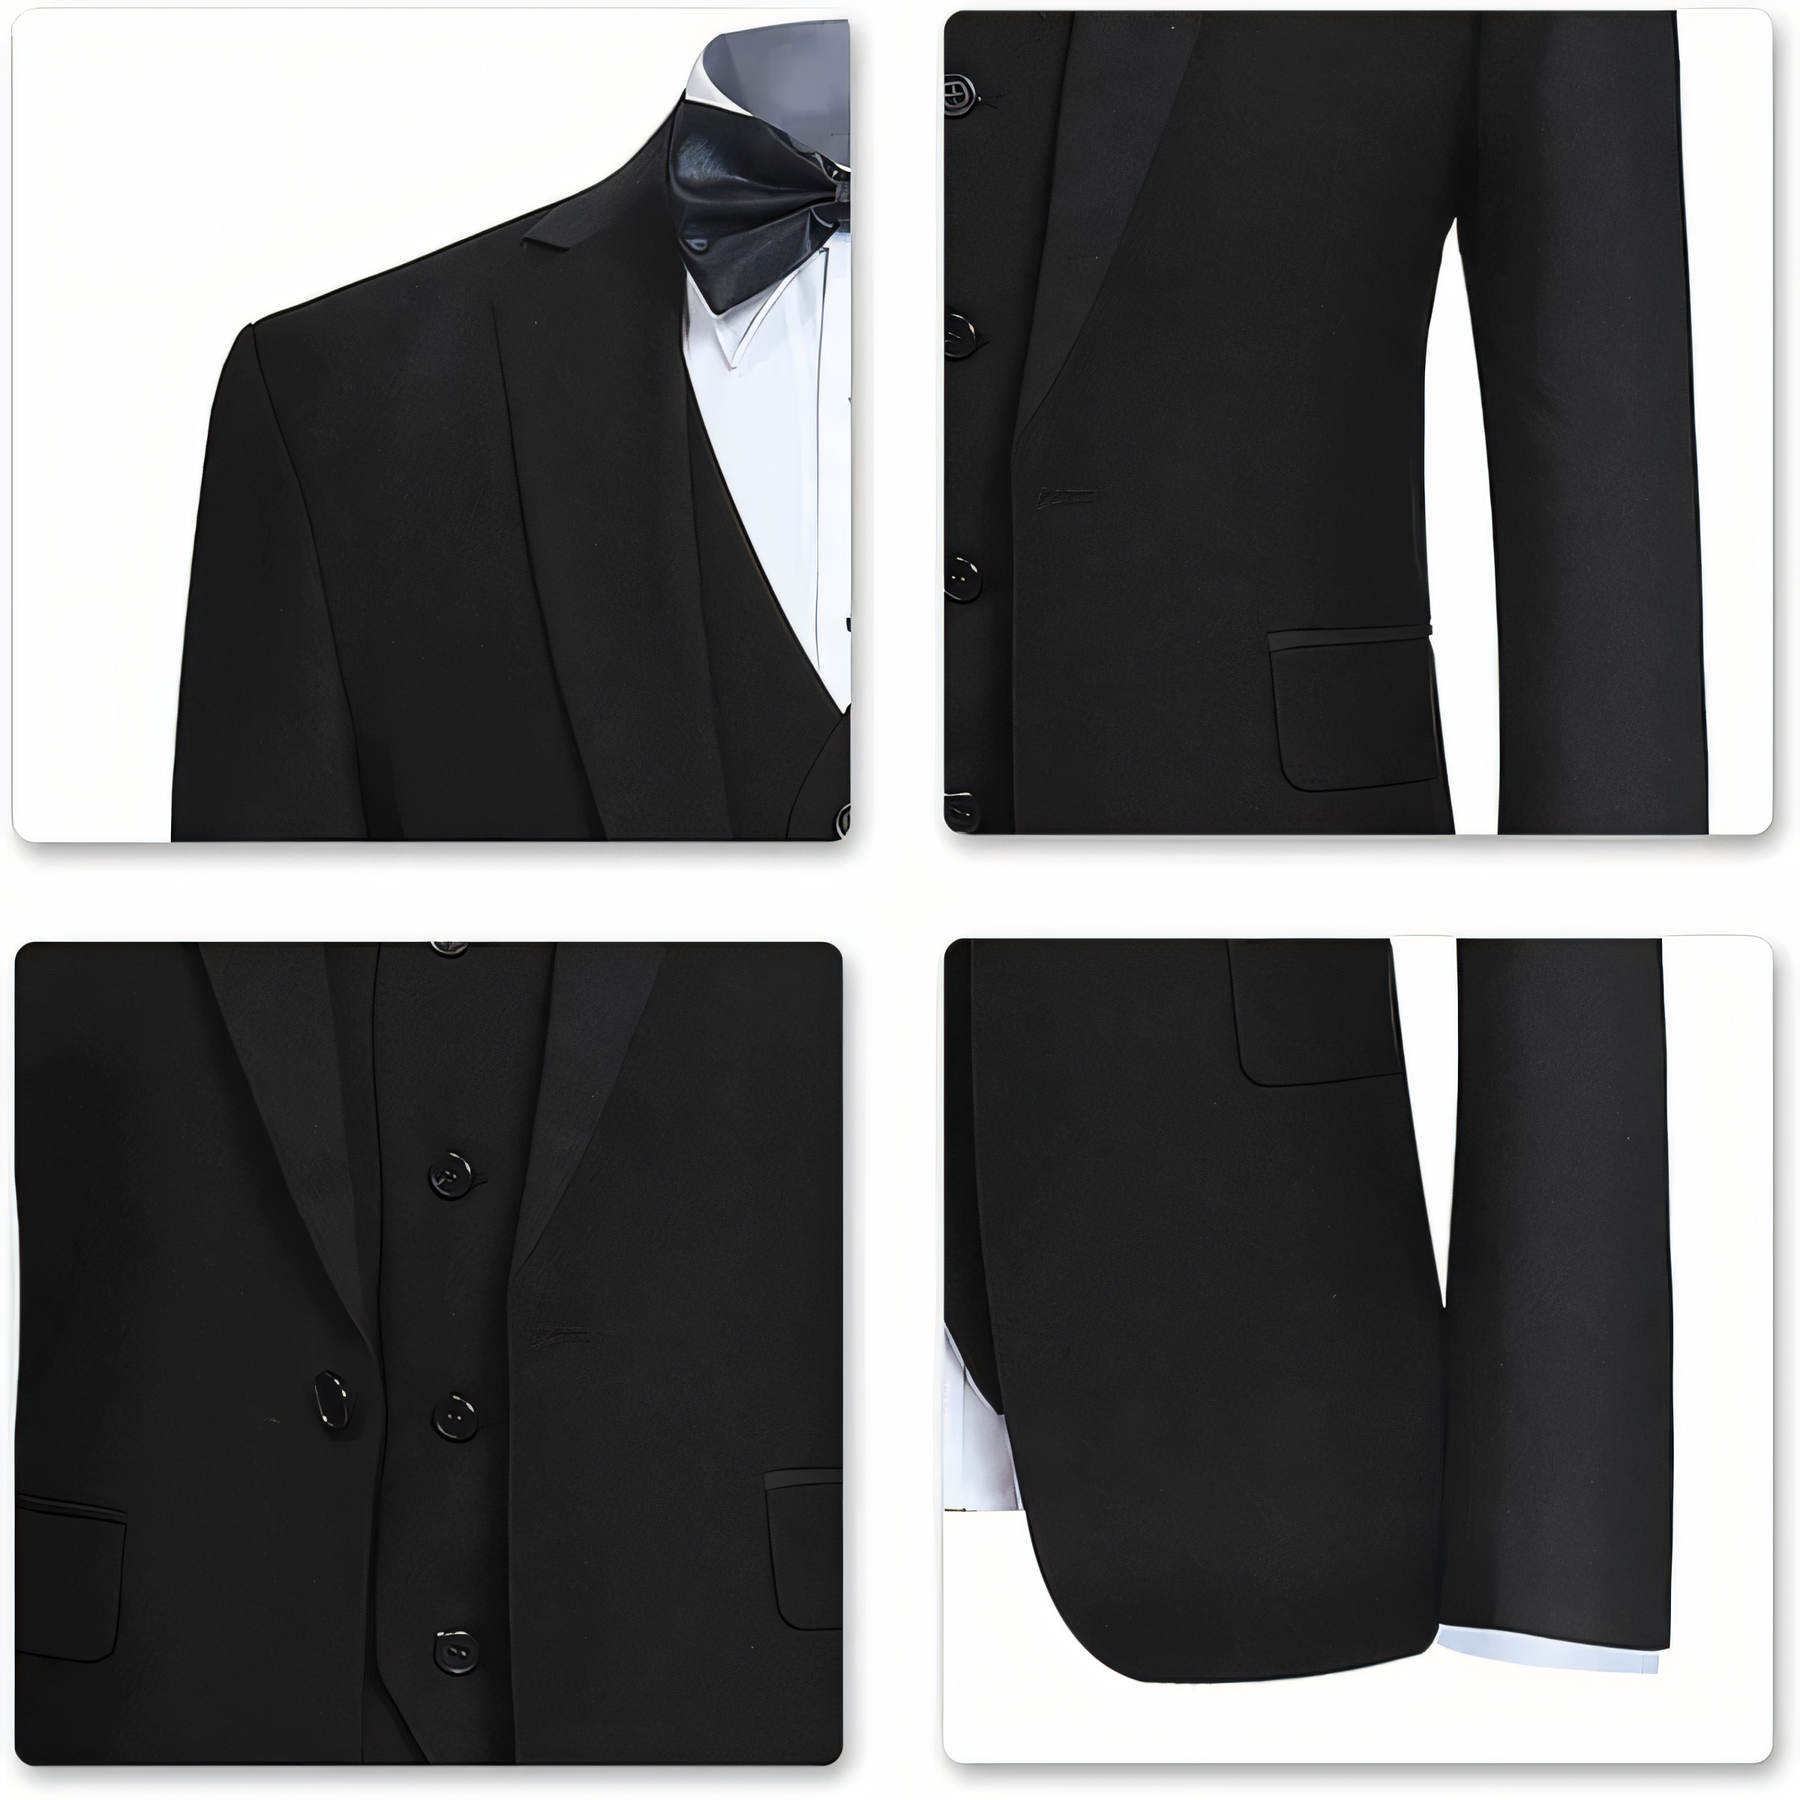 Formal 3 Piece Men's Suit Slim Fit Solid Peak Lapel Suit